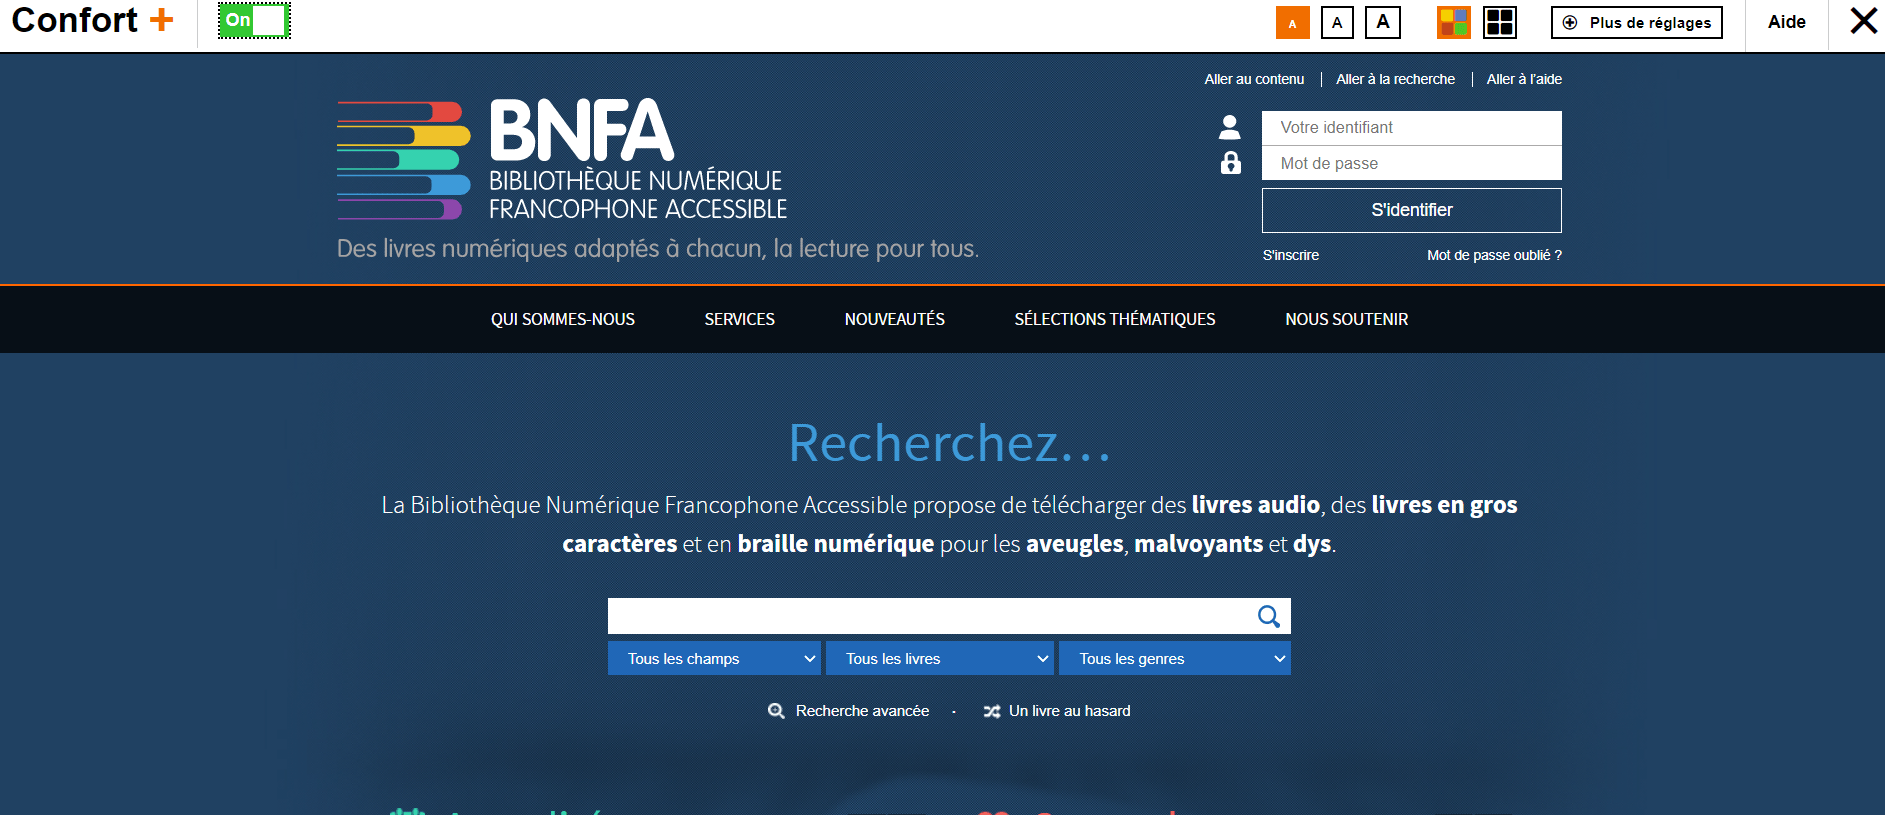 Bibliothèque Numérique Francophone Accessible